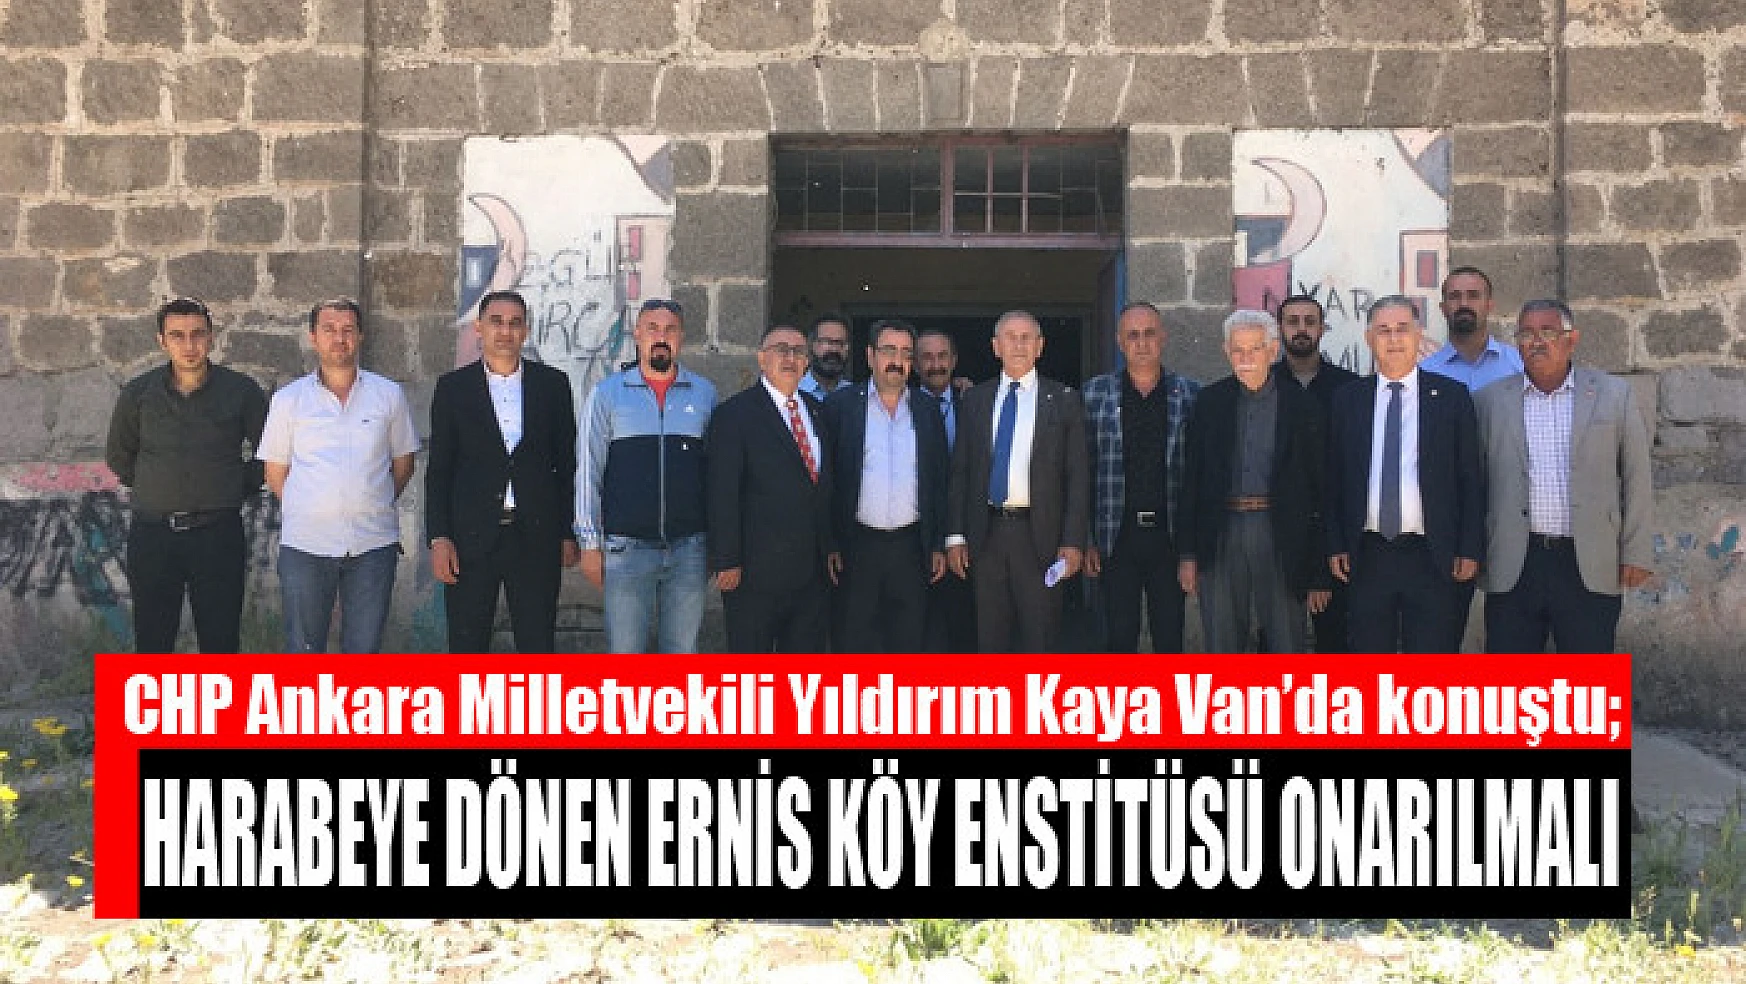 Kaya: Harabeye dönen Ernis Köy Enstitüsü onarılmalı